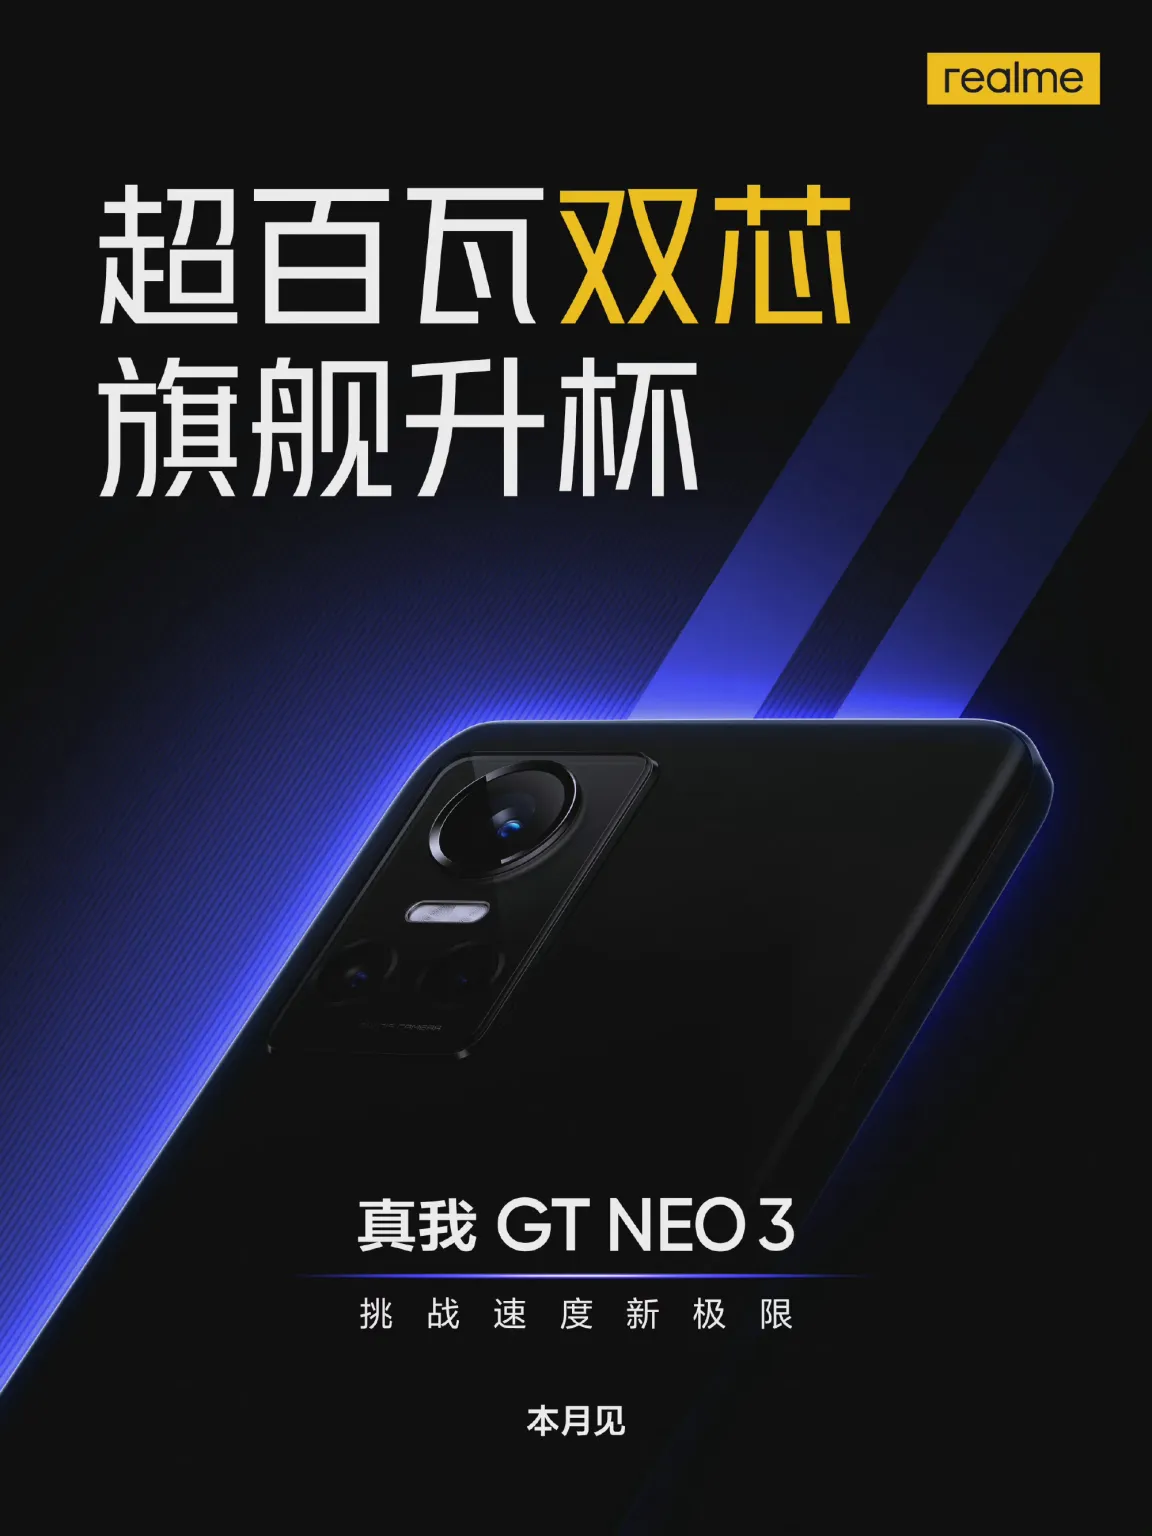 Realme GT Neo 3: сроки запуска и первое официальное изображение – фото 1